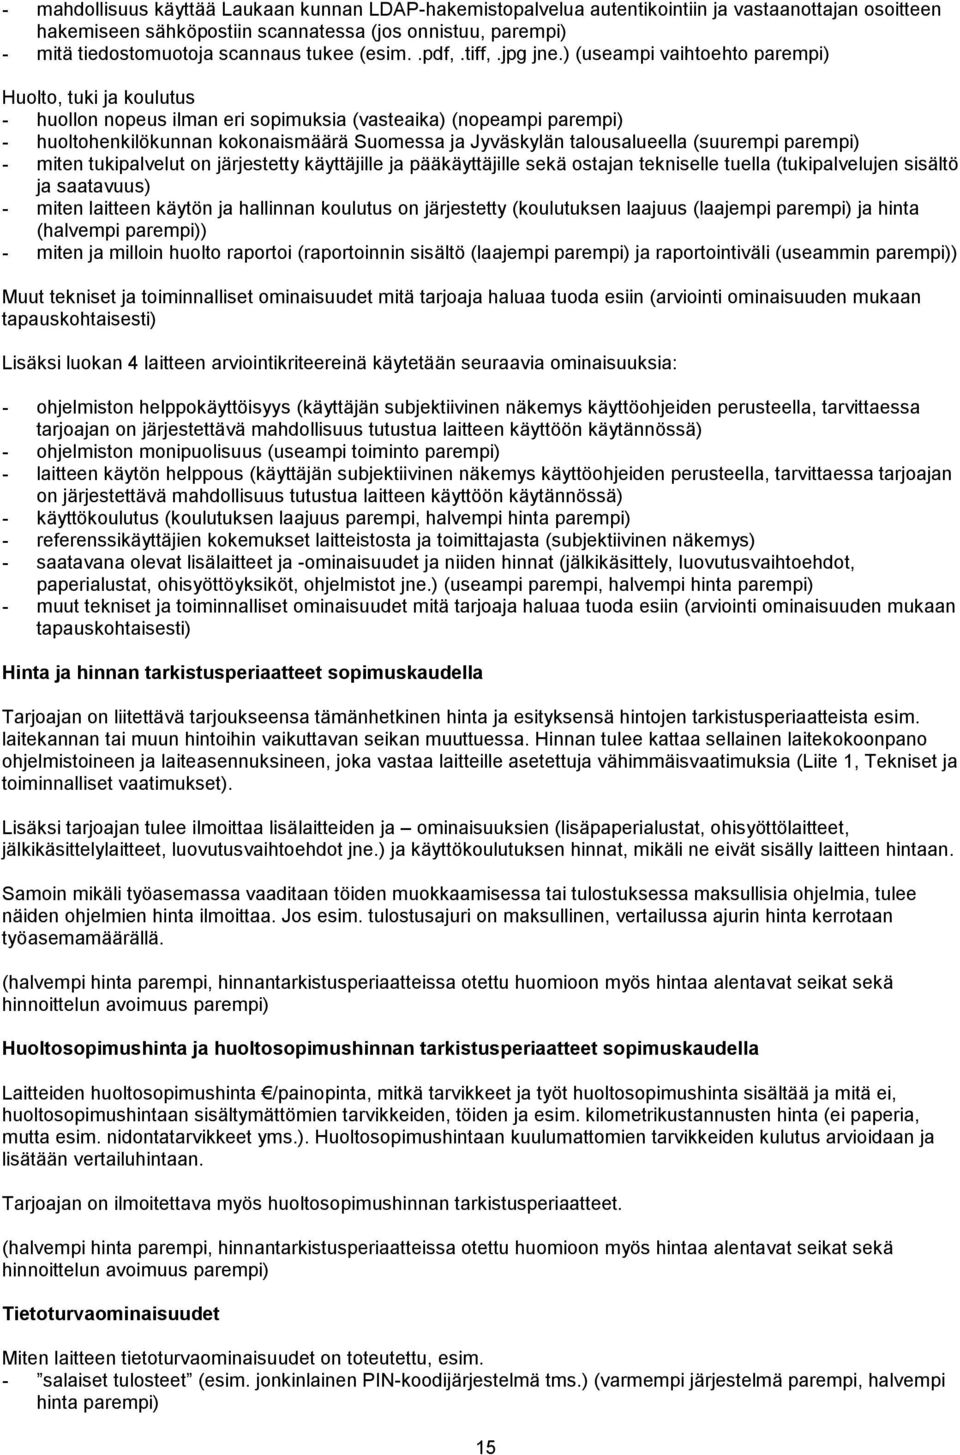 Laukaan kunta PL Laukaa TARJOUSPYYNTÖ KOPIOKONEIDEN TOIMITTAMISESTA - PDF  Free Download